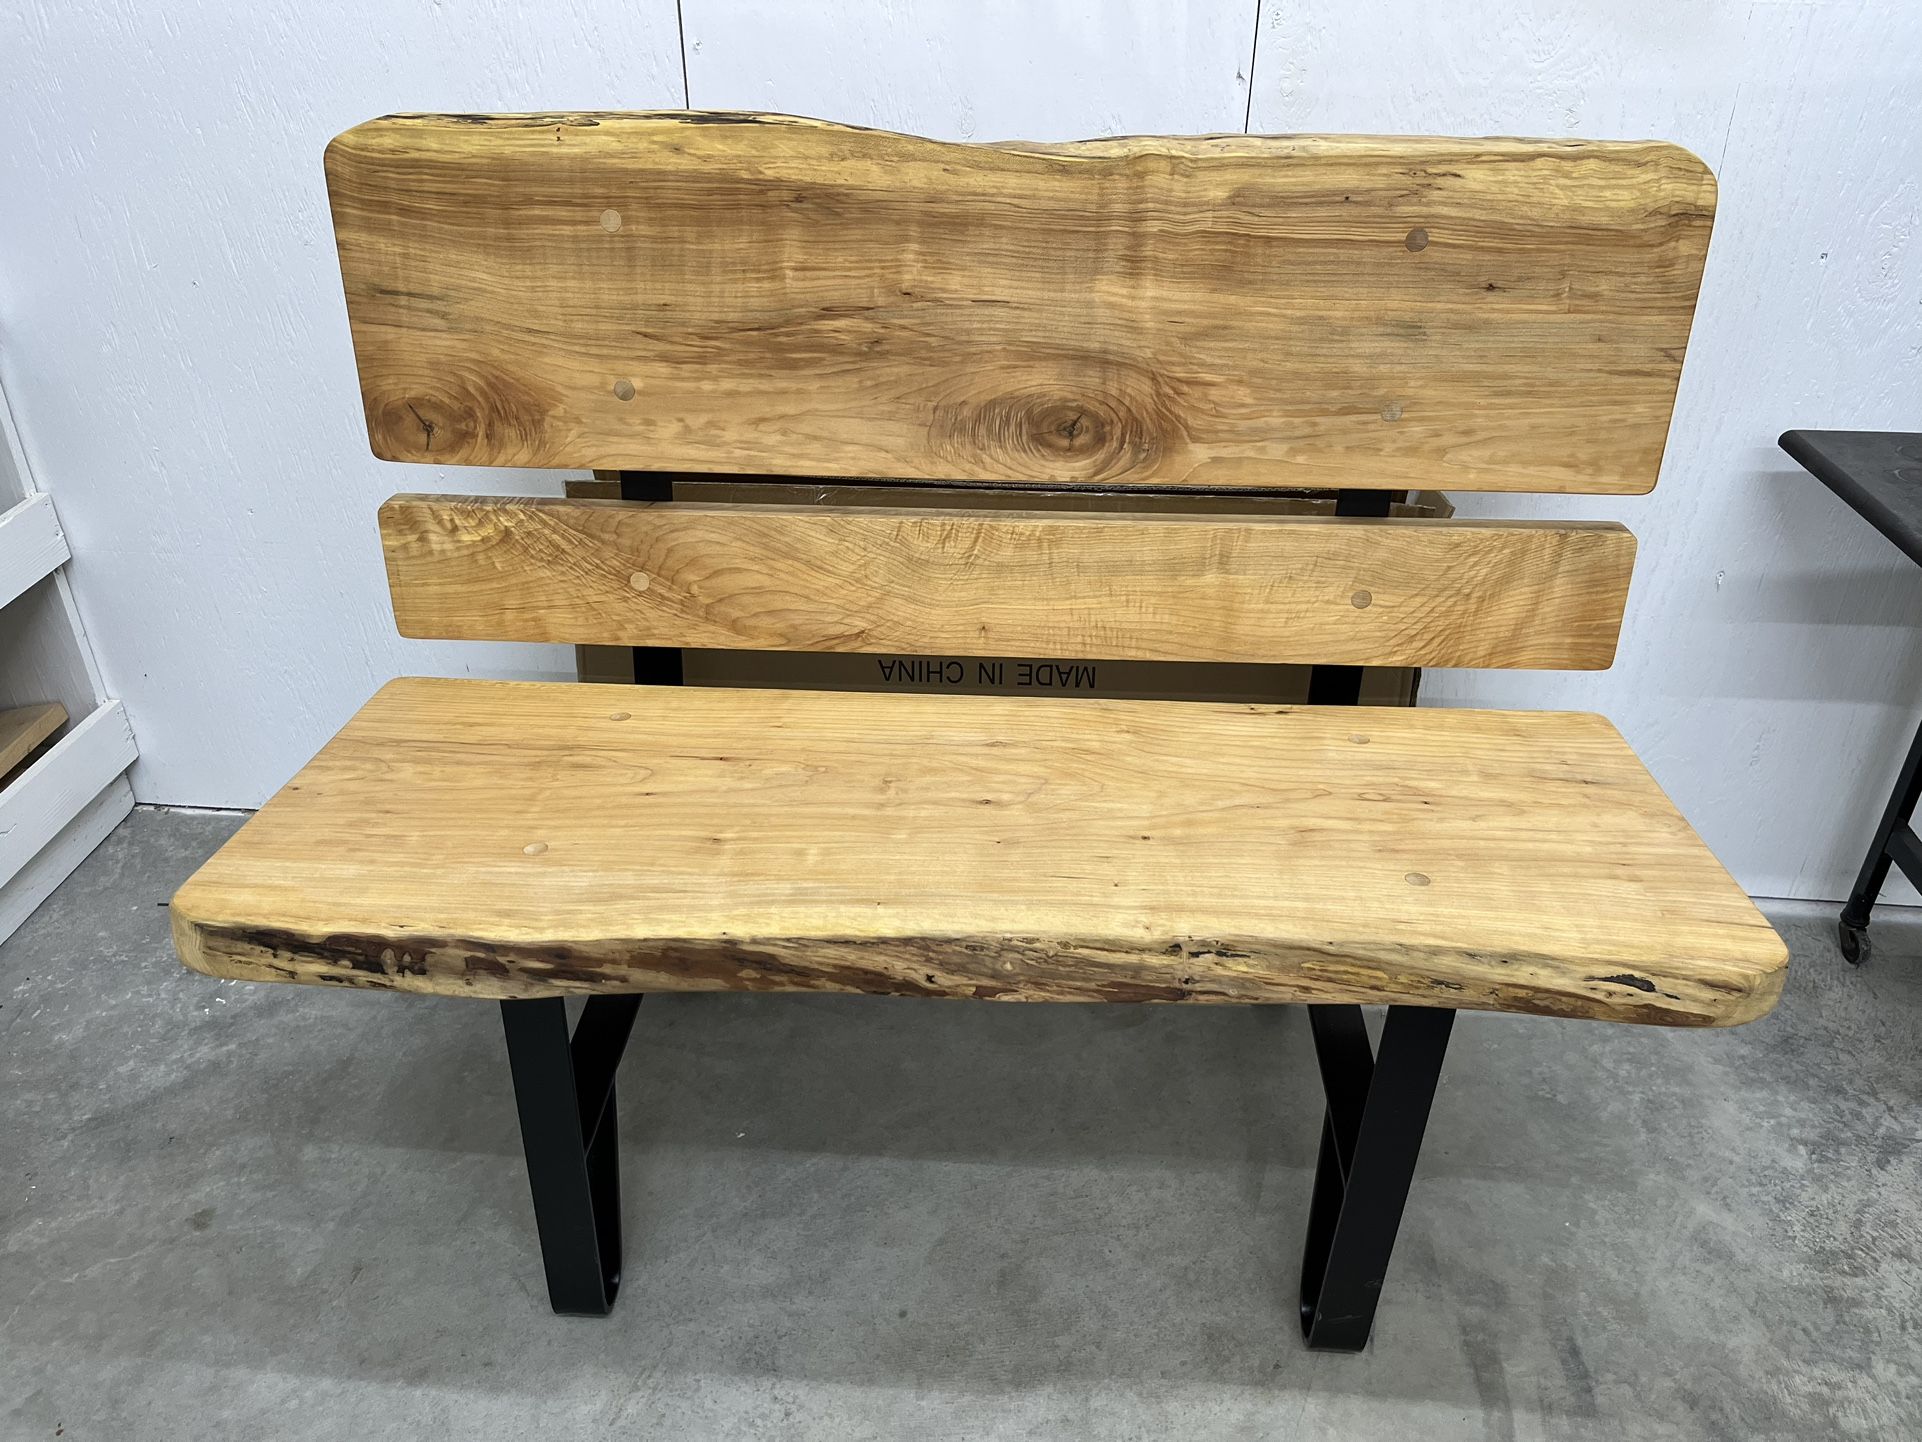 Custom Maple Outdoor Bench